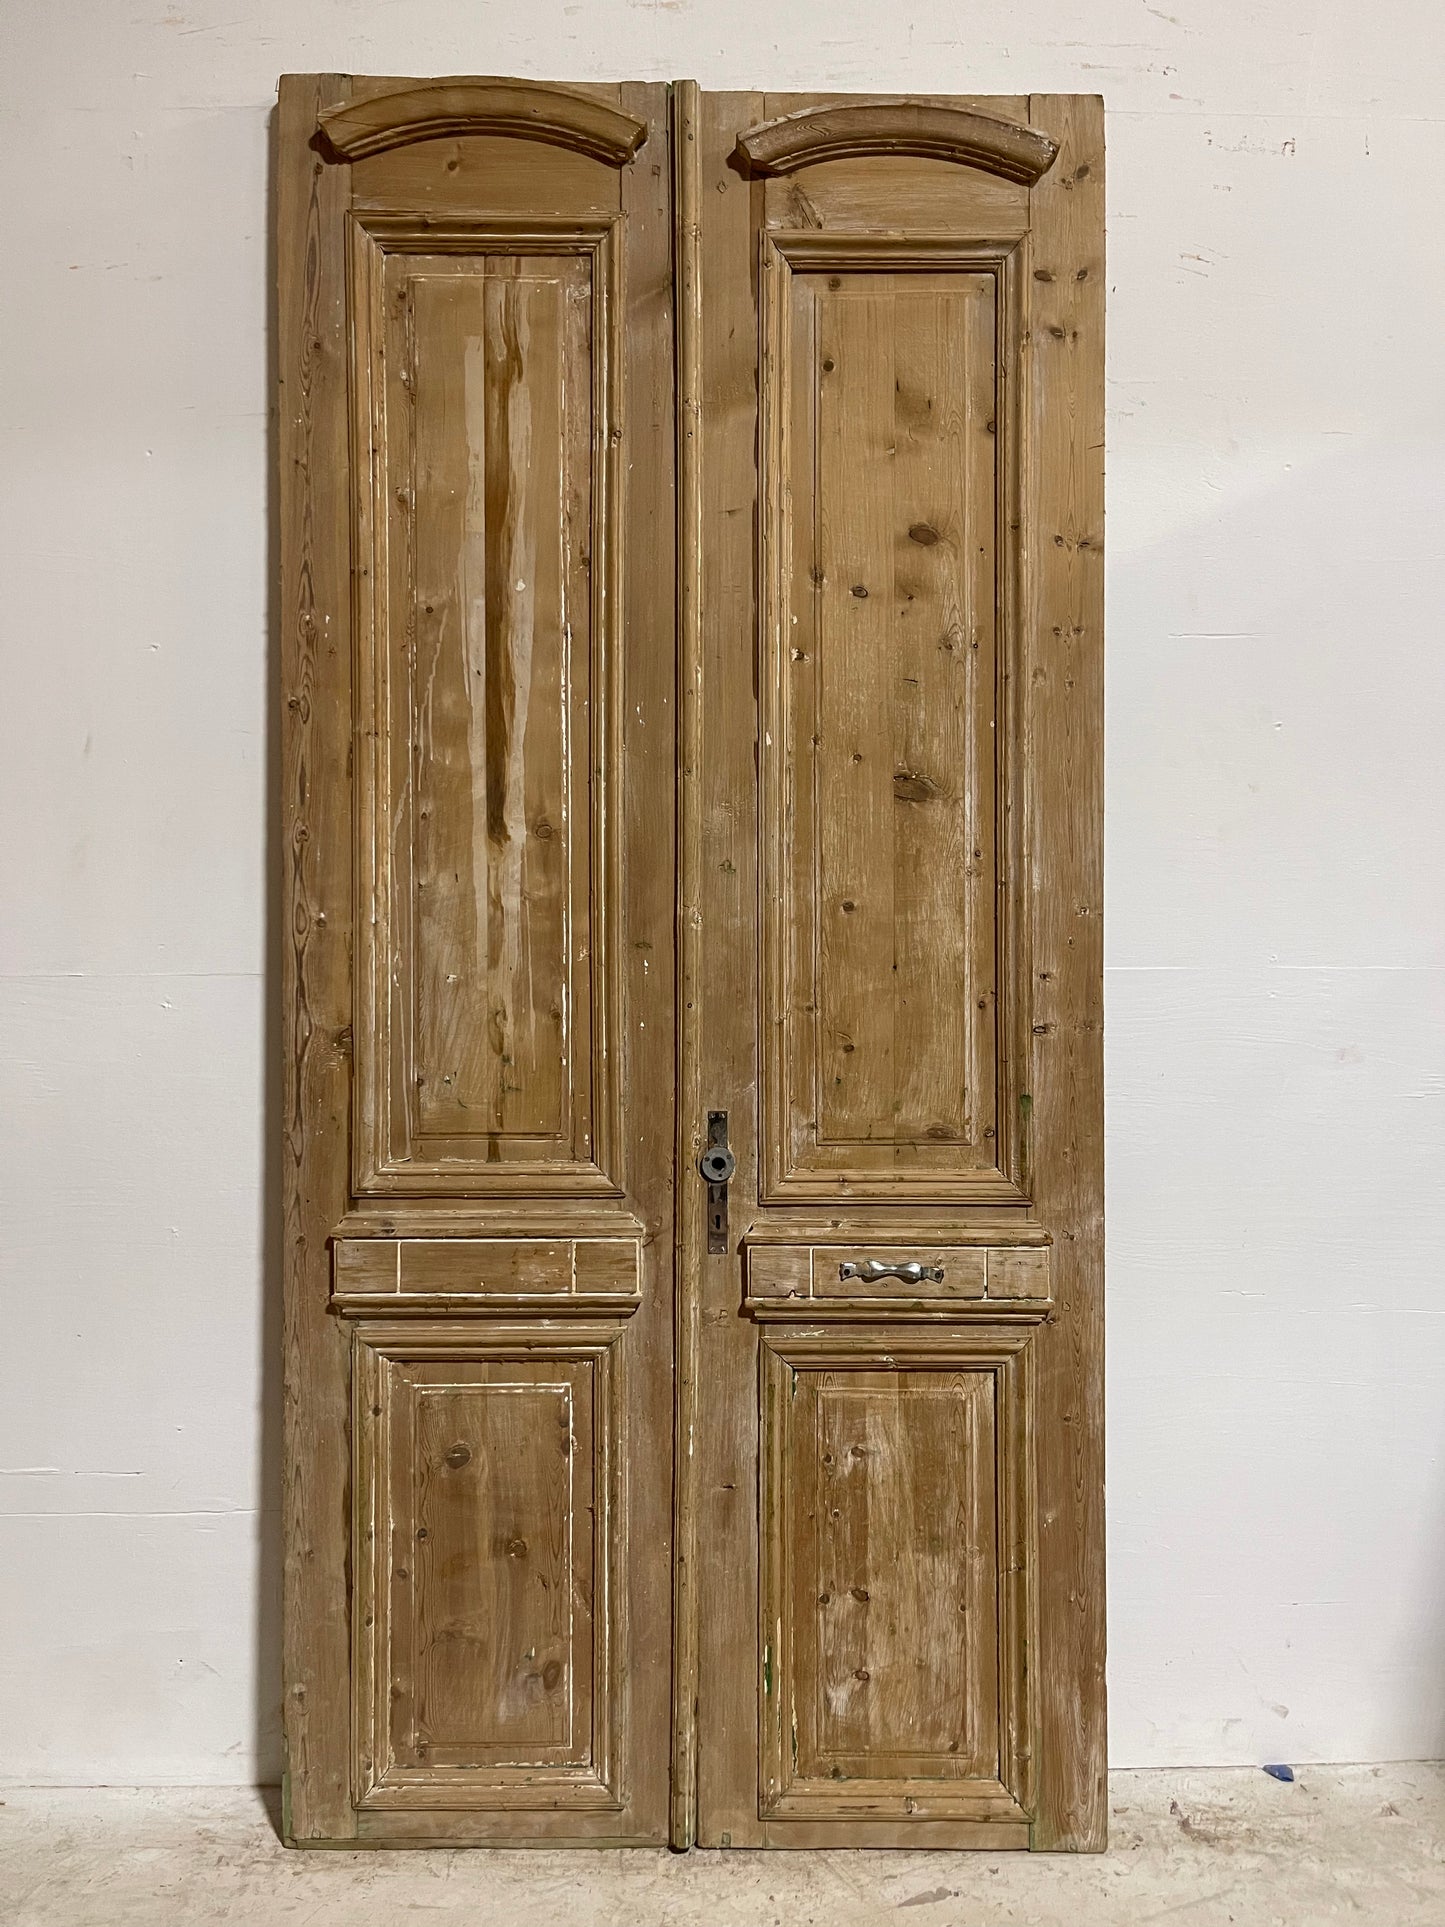 Antique French Panel Doors (93.75x45.25) J005